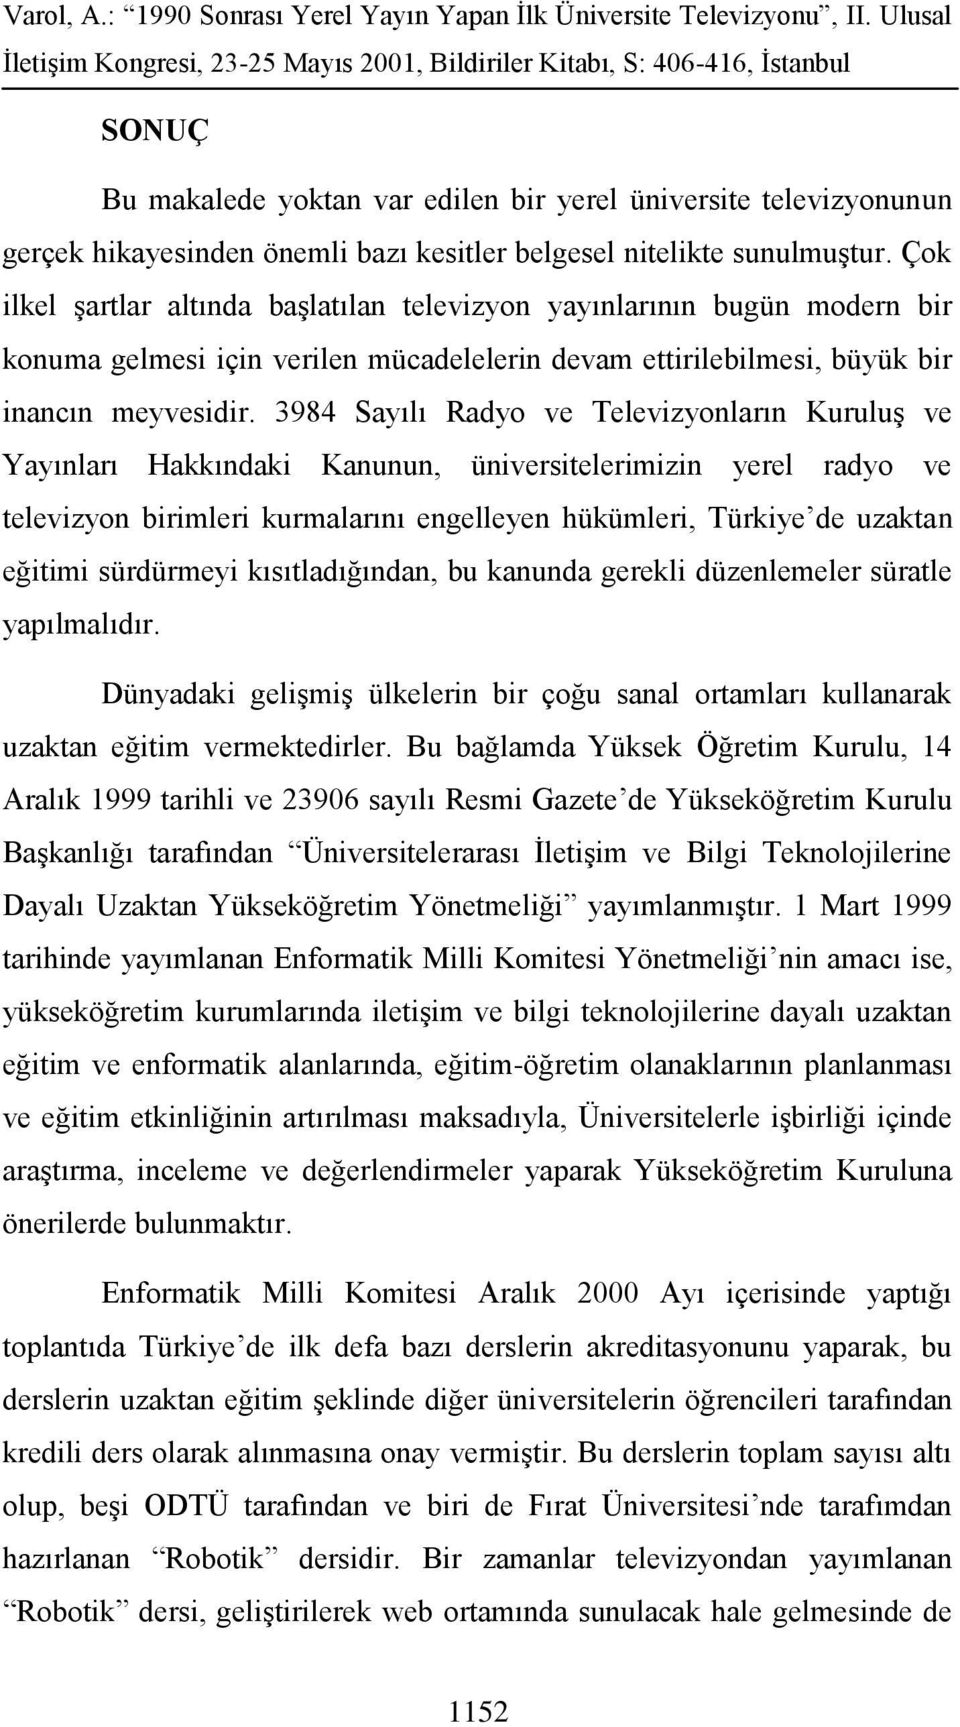 3984 Sayılı Radyo ve Televizyonların Kuruluş ve Yayınları Hakkındaki Kanunun, üniversitelerimizin yerel radyo ve televizyon birimleri kurmalarını engelleyen hükümleri, Türkiye de uzaktan eğitimi